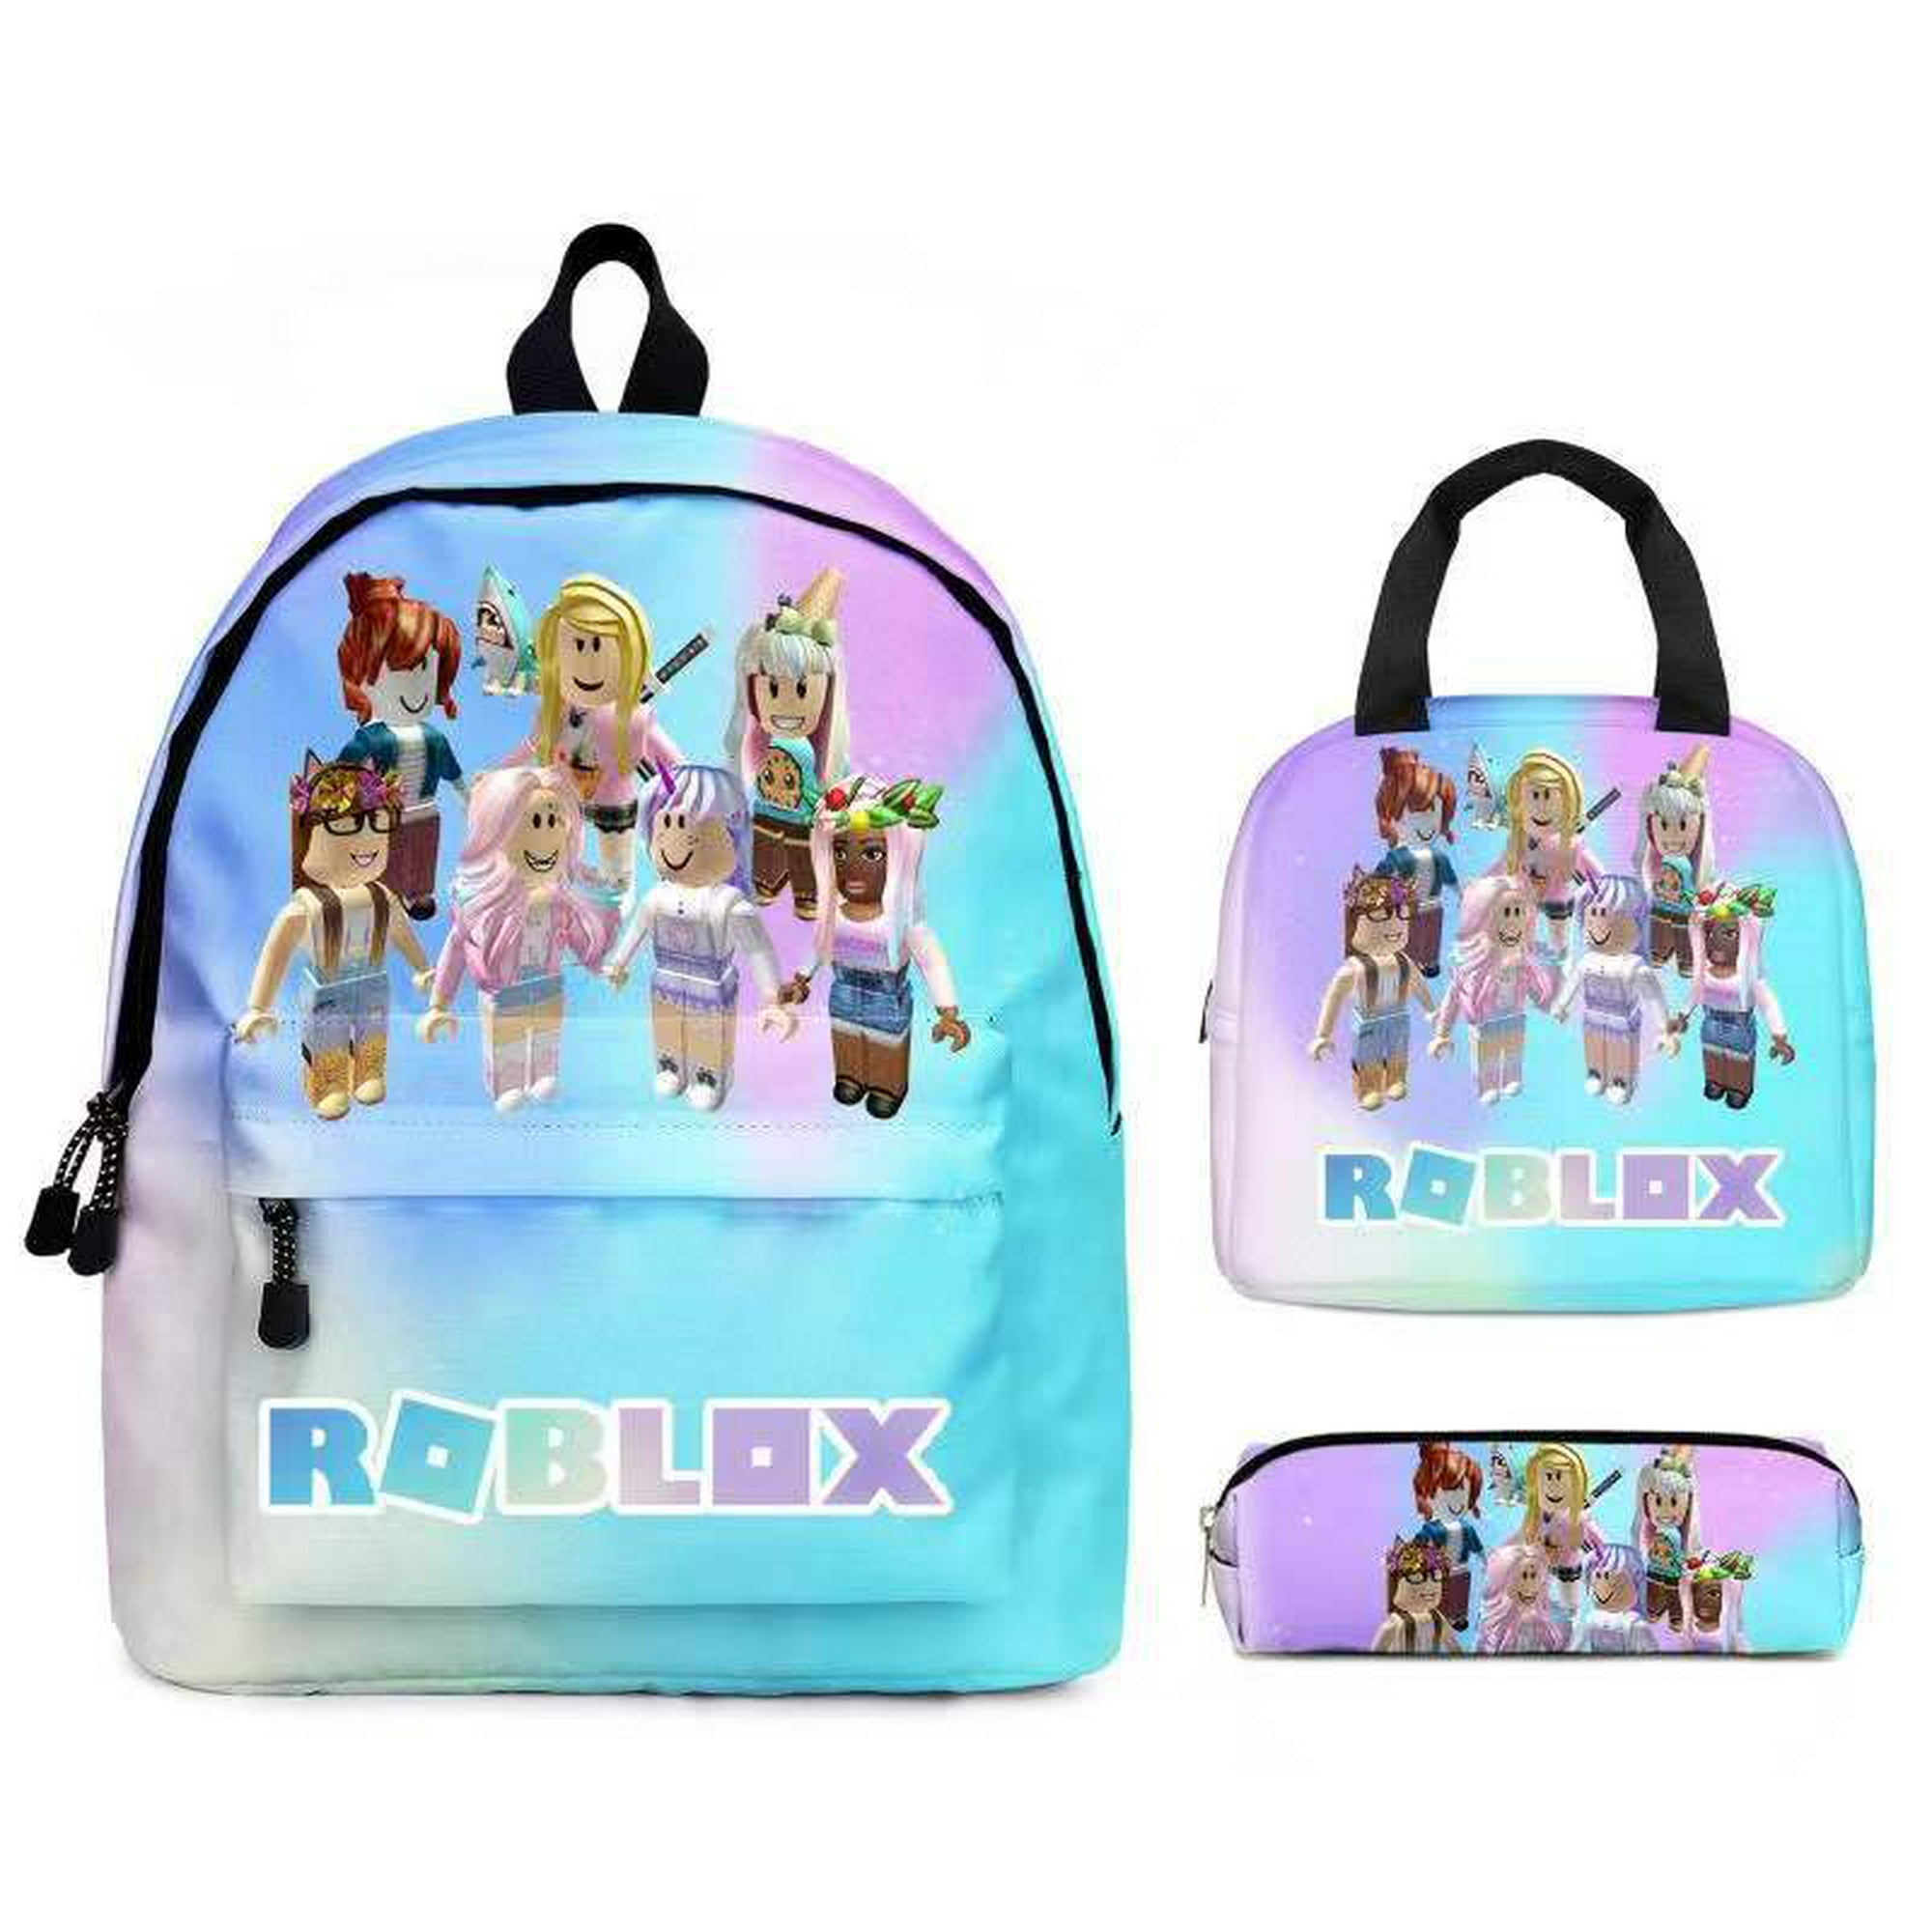 Mochila infantil ROBLOX 3D Print, mochilas escolares, desenhos